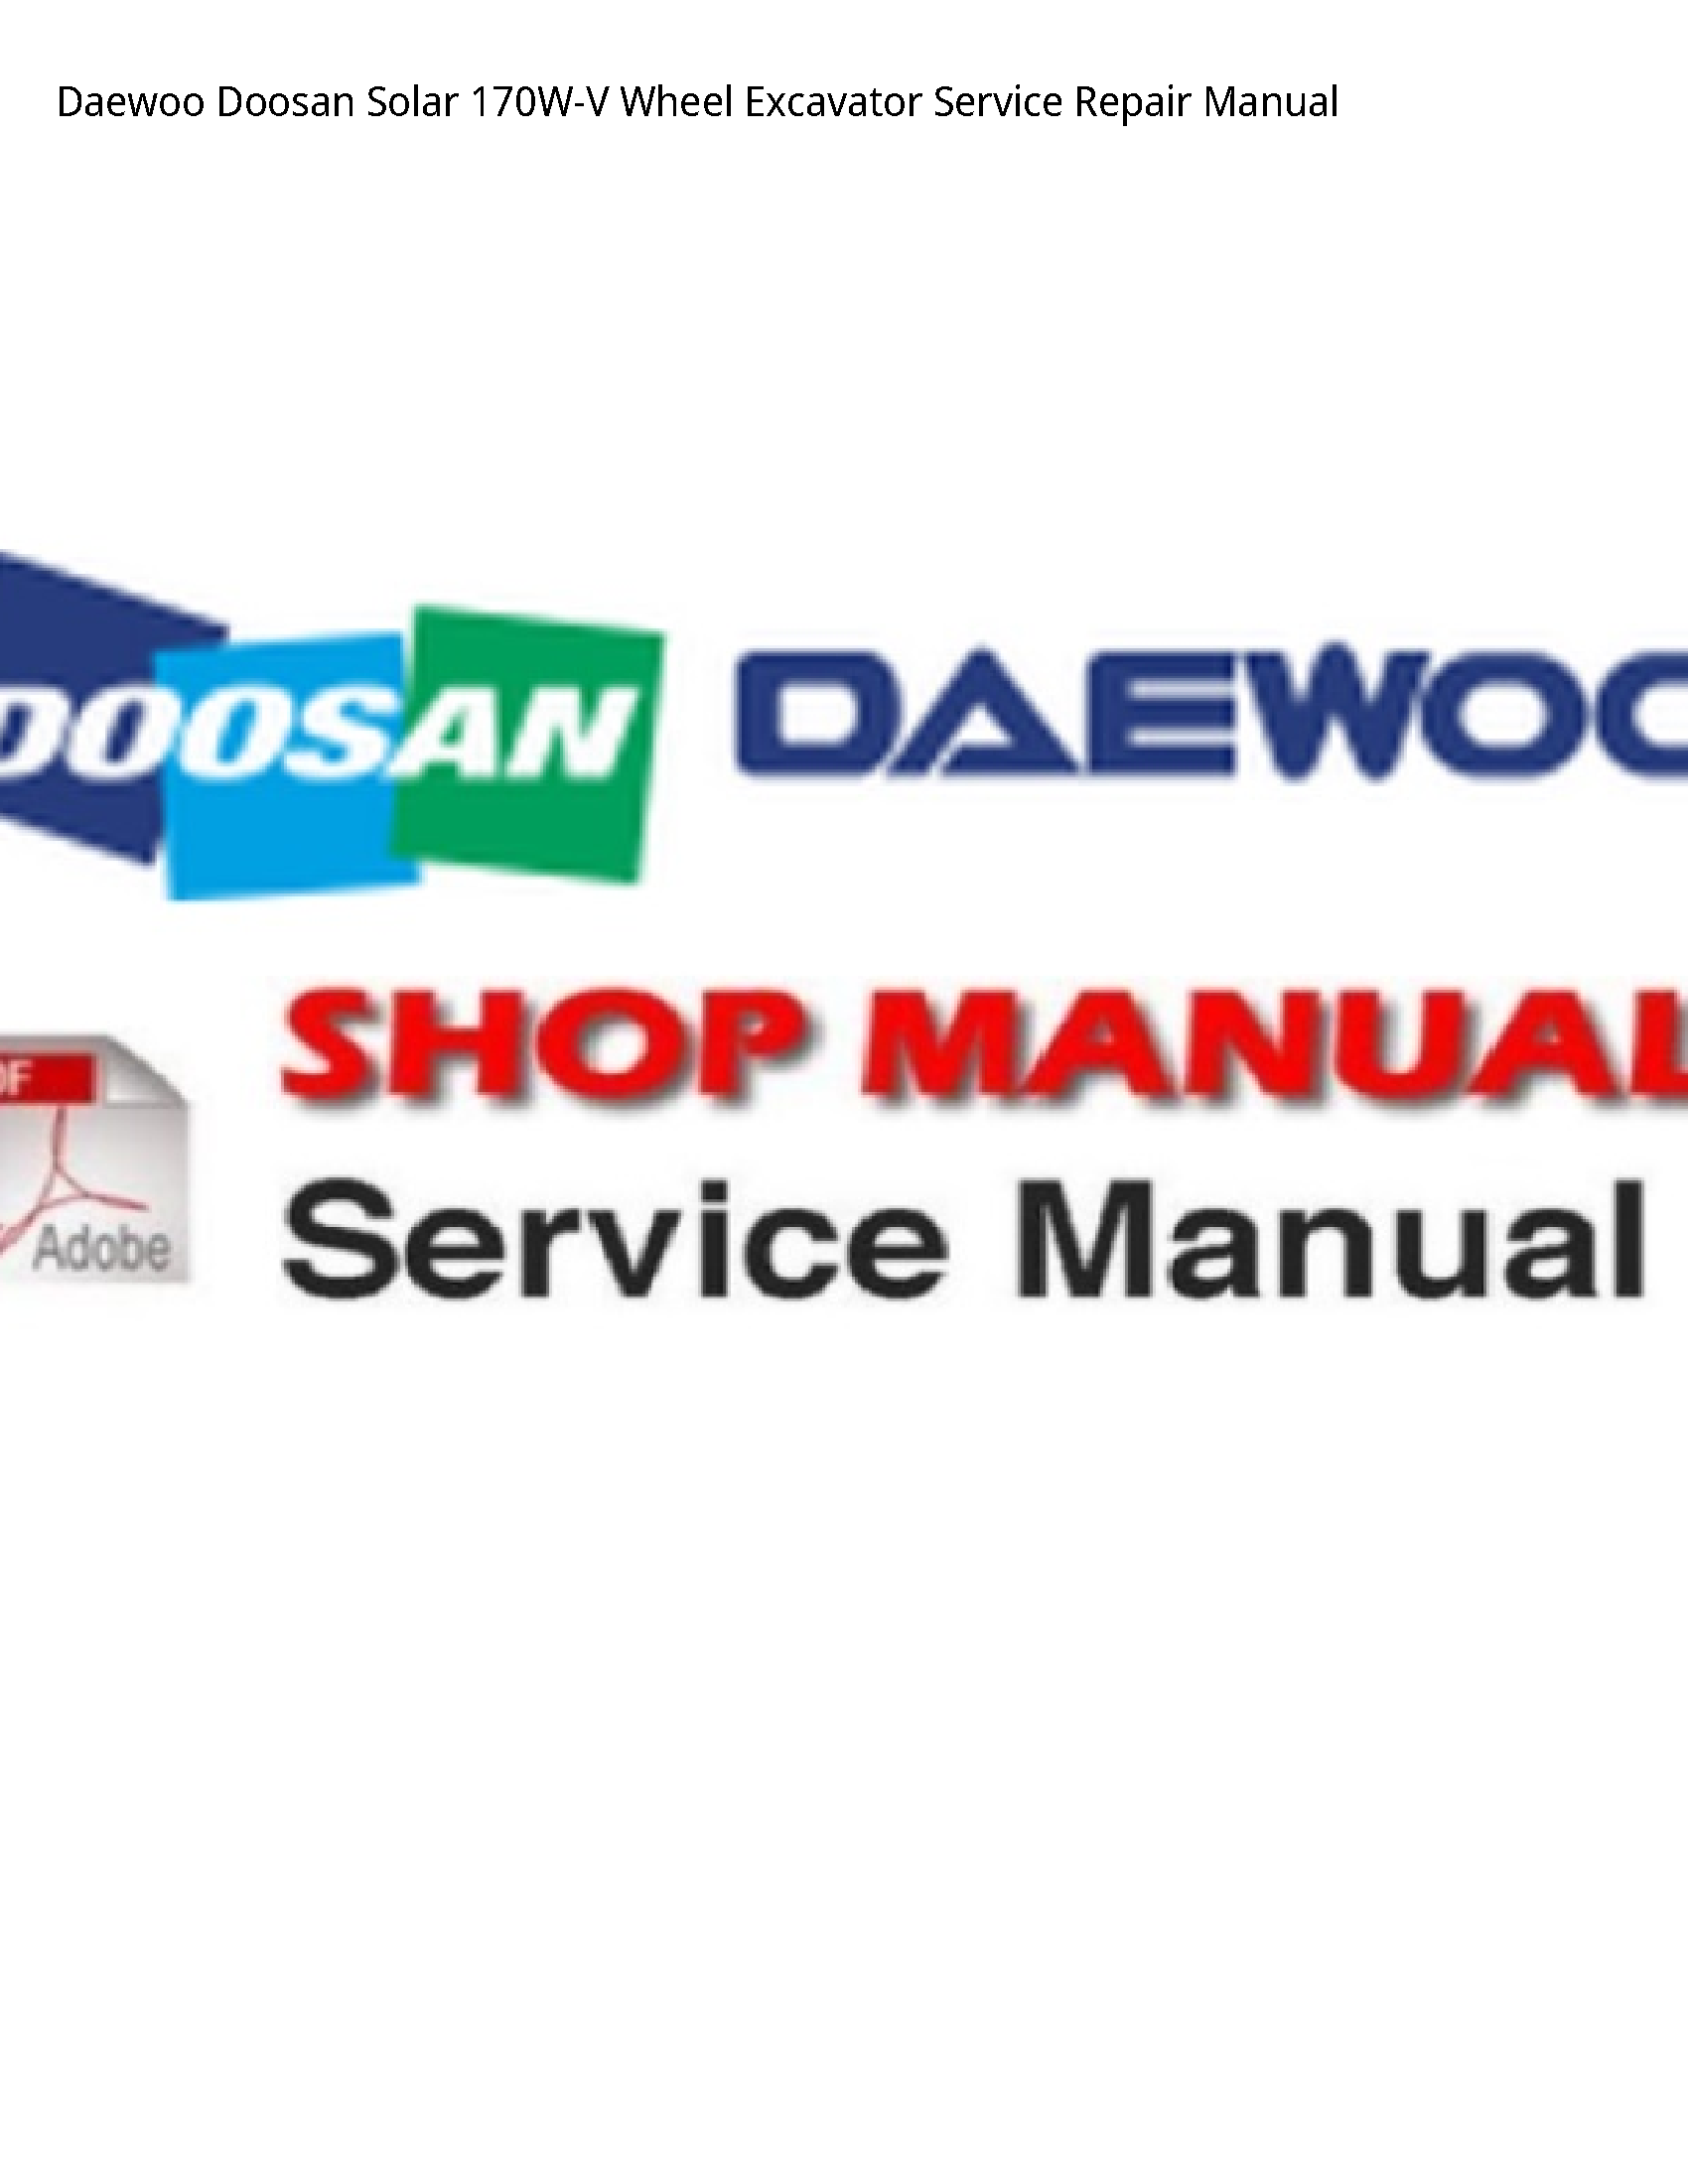 Daewoo Doosan 170W-V Solar Wheel Excavator manual